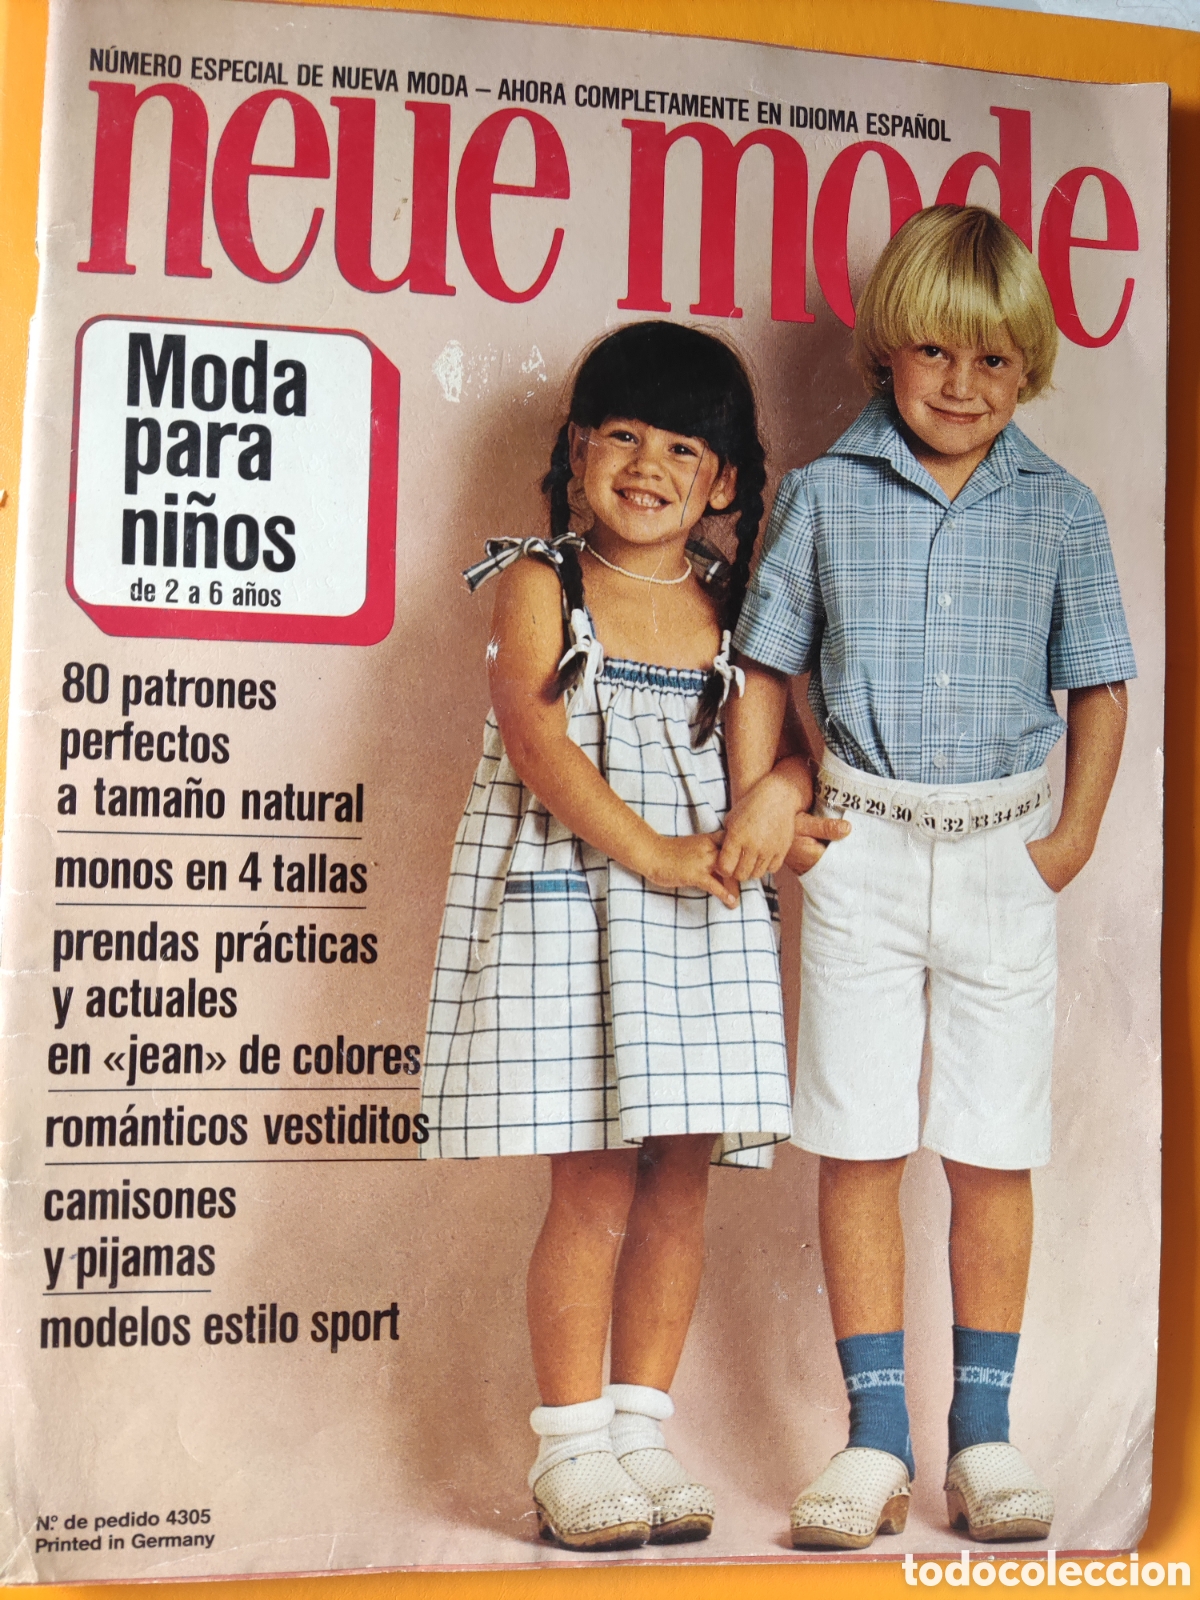 Revista Patrones Infantiles nº 2 - Moda para Niños 30 Patrones